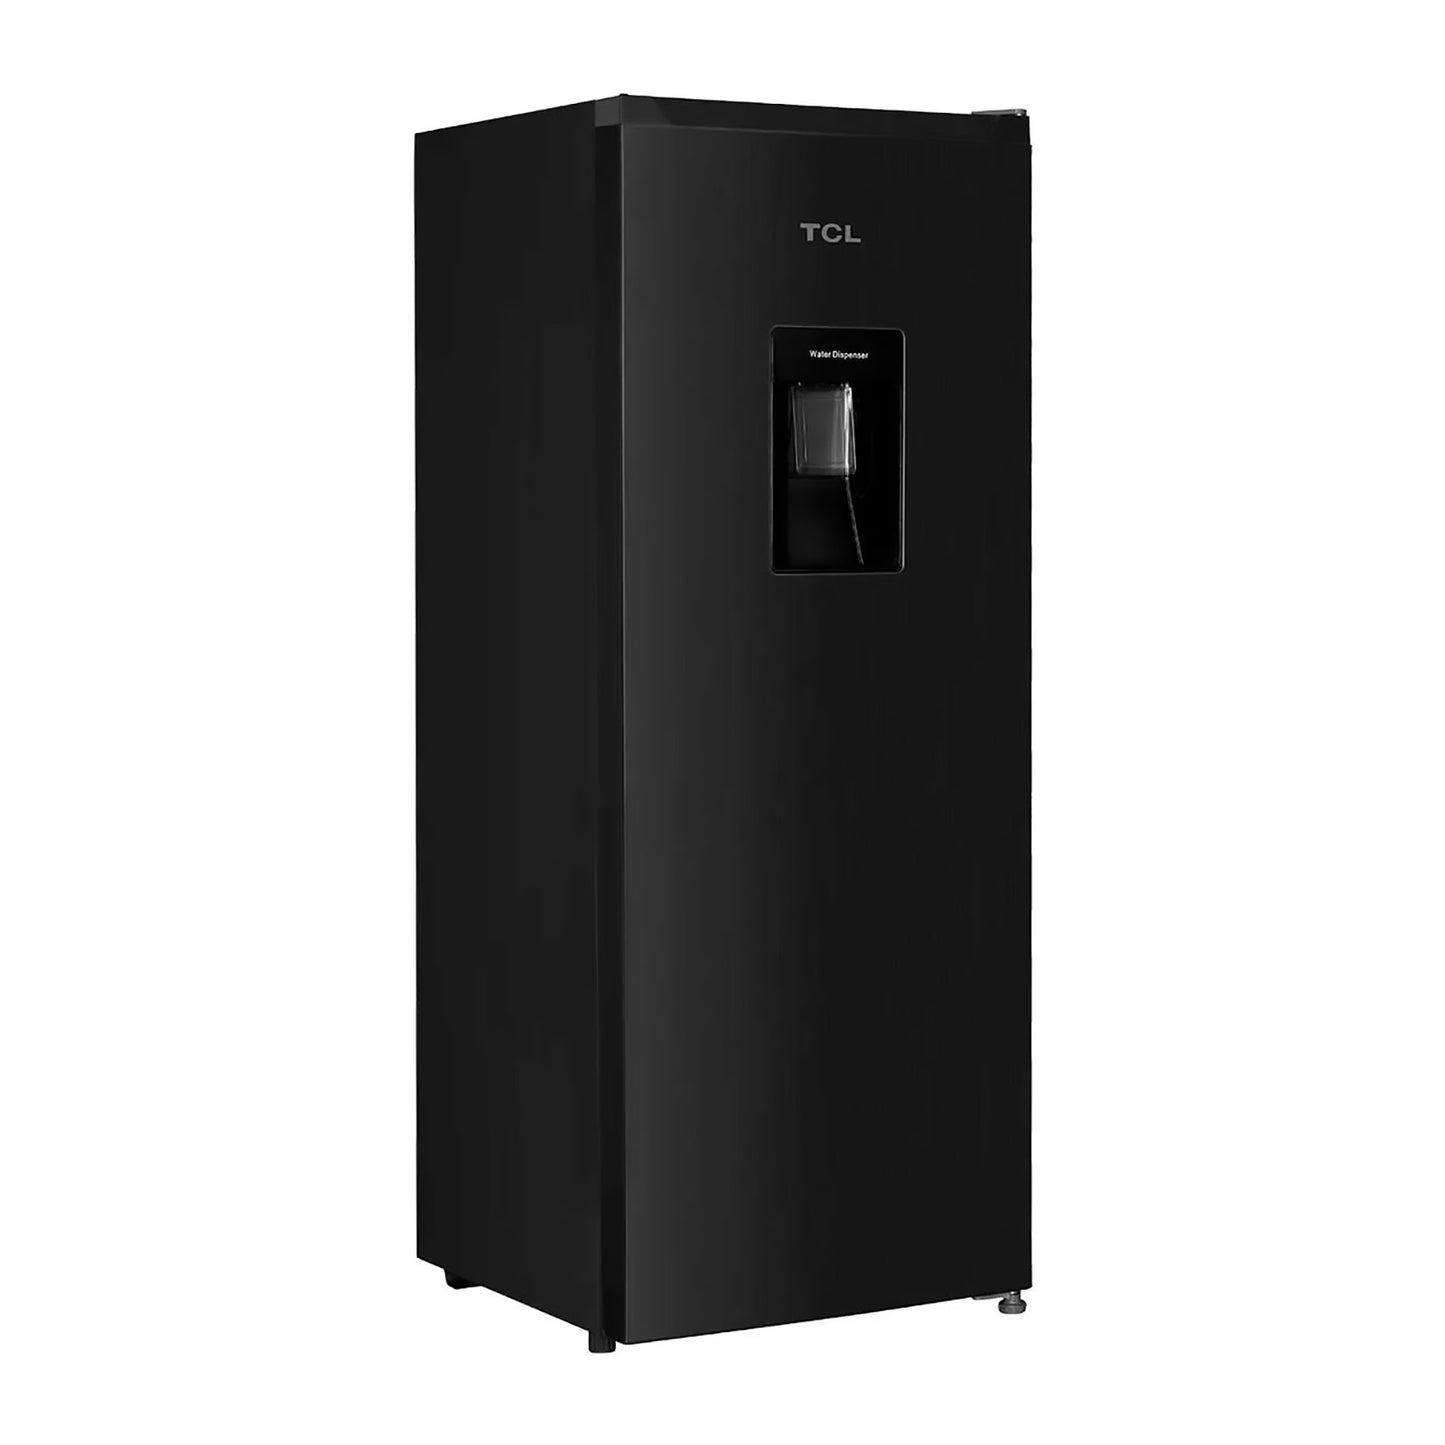 Refrigerador TCL 6 Pies Cúbicos con Dispensador de Agua TSD60BW-NEGRO